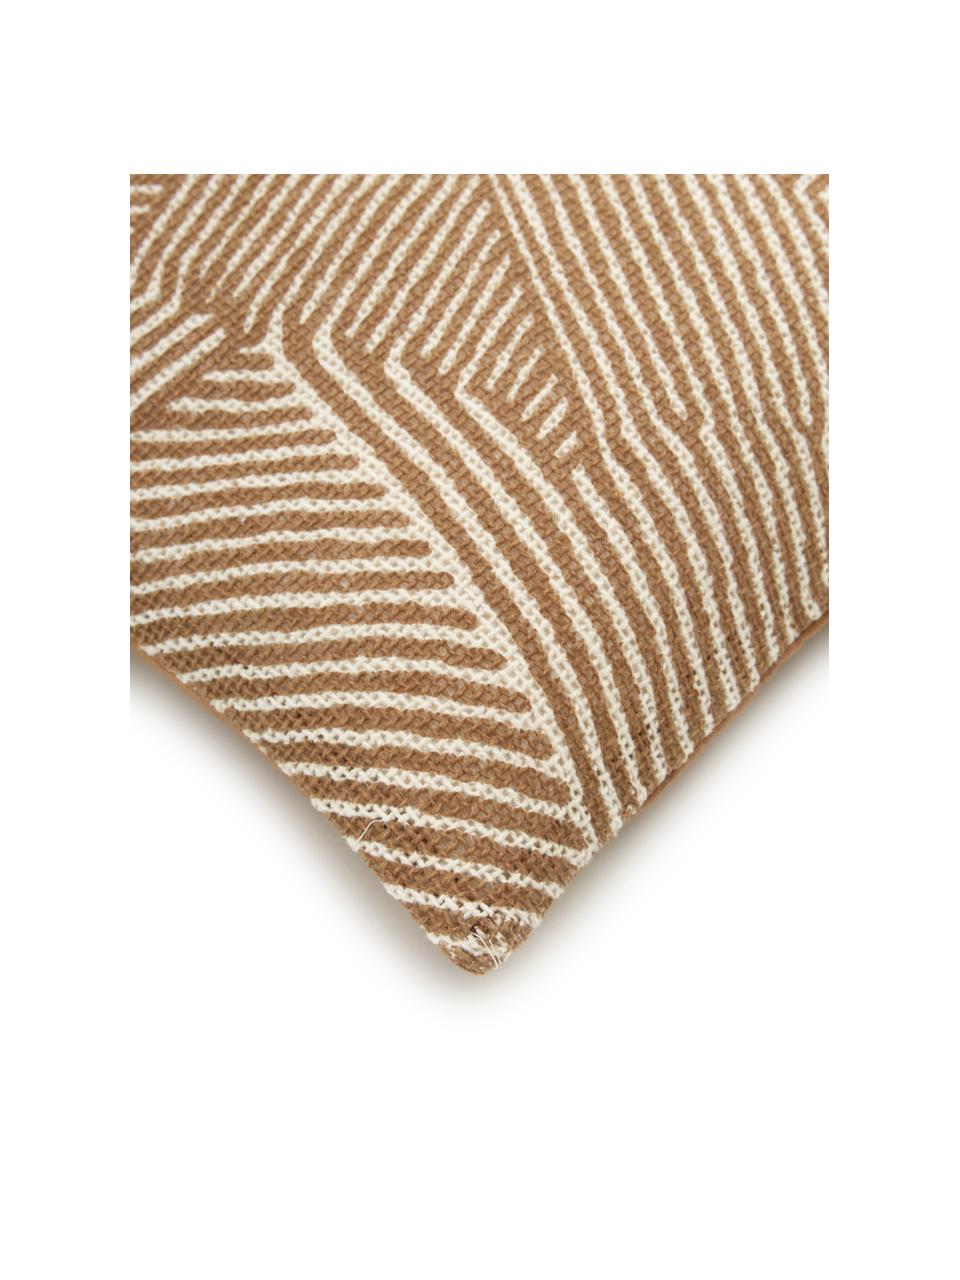 Kissenhülle Nadia mit grafischem Muster, 100%  Baumwolle, Braun, Cremeweiß, B 30 x L 50 cm